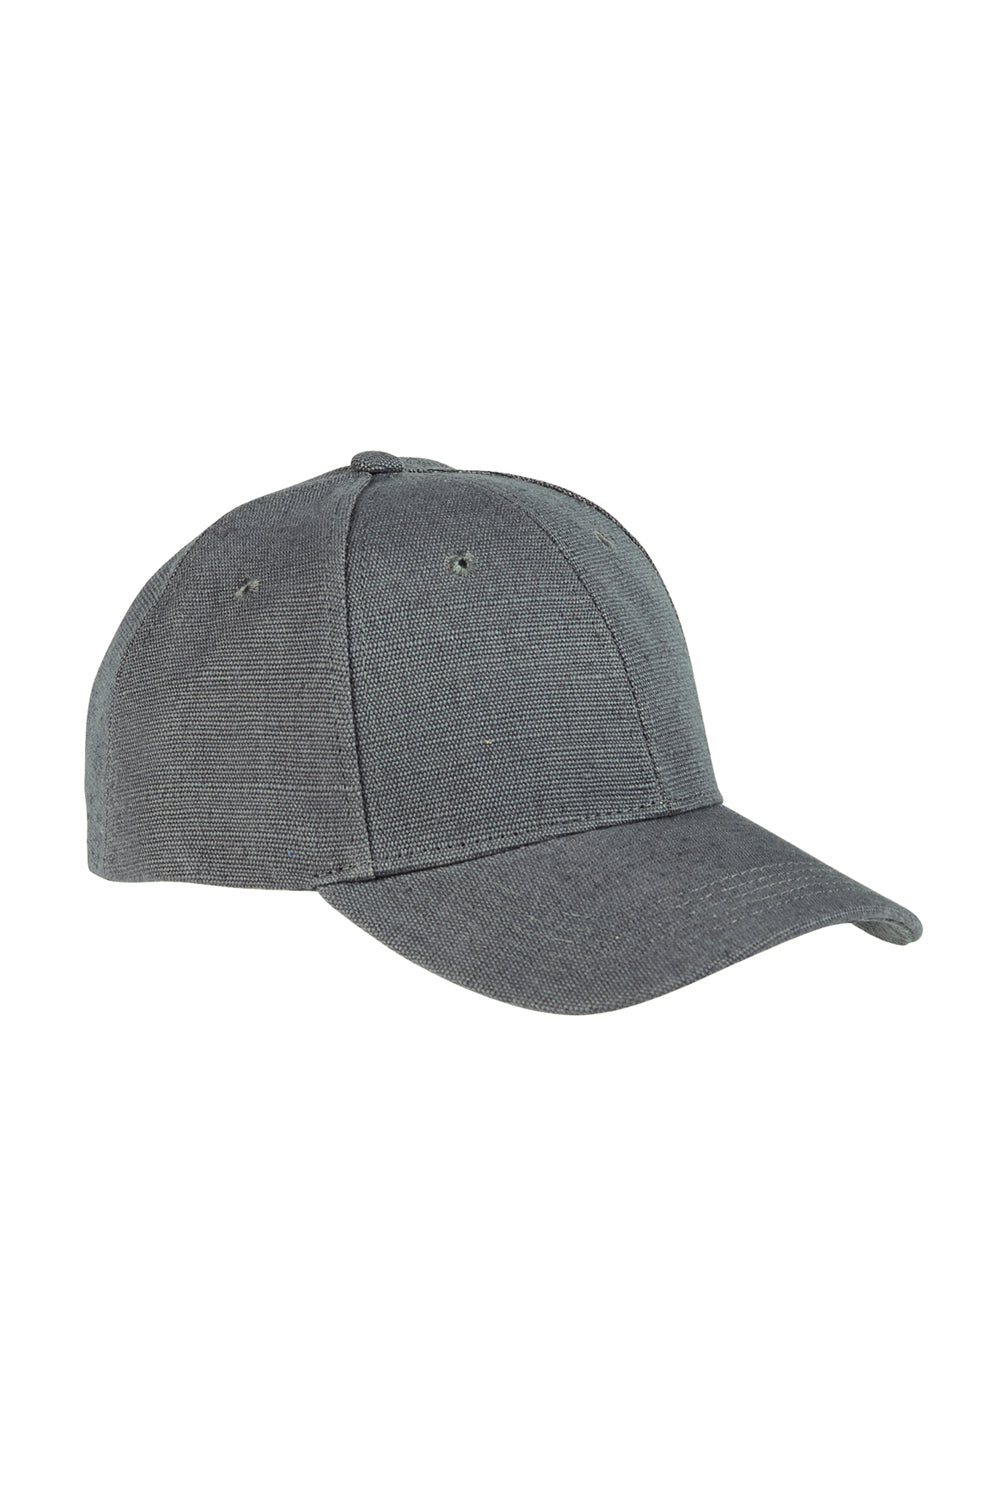 Econscious EC7090 Mens Adjustable Hat Charcoal Grey Front